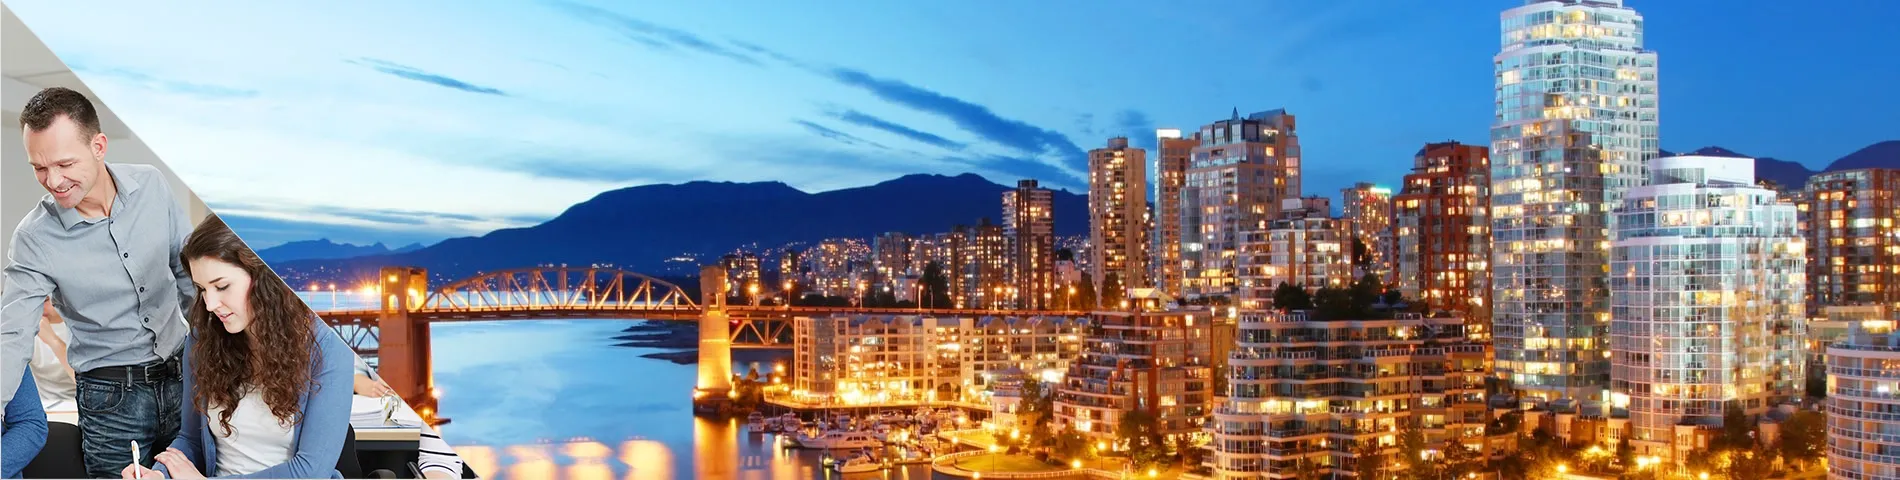 Vancouver - Combinado: Clases en Grupo + Particulares